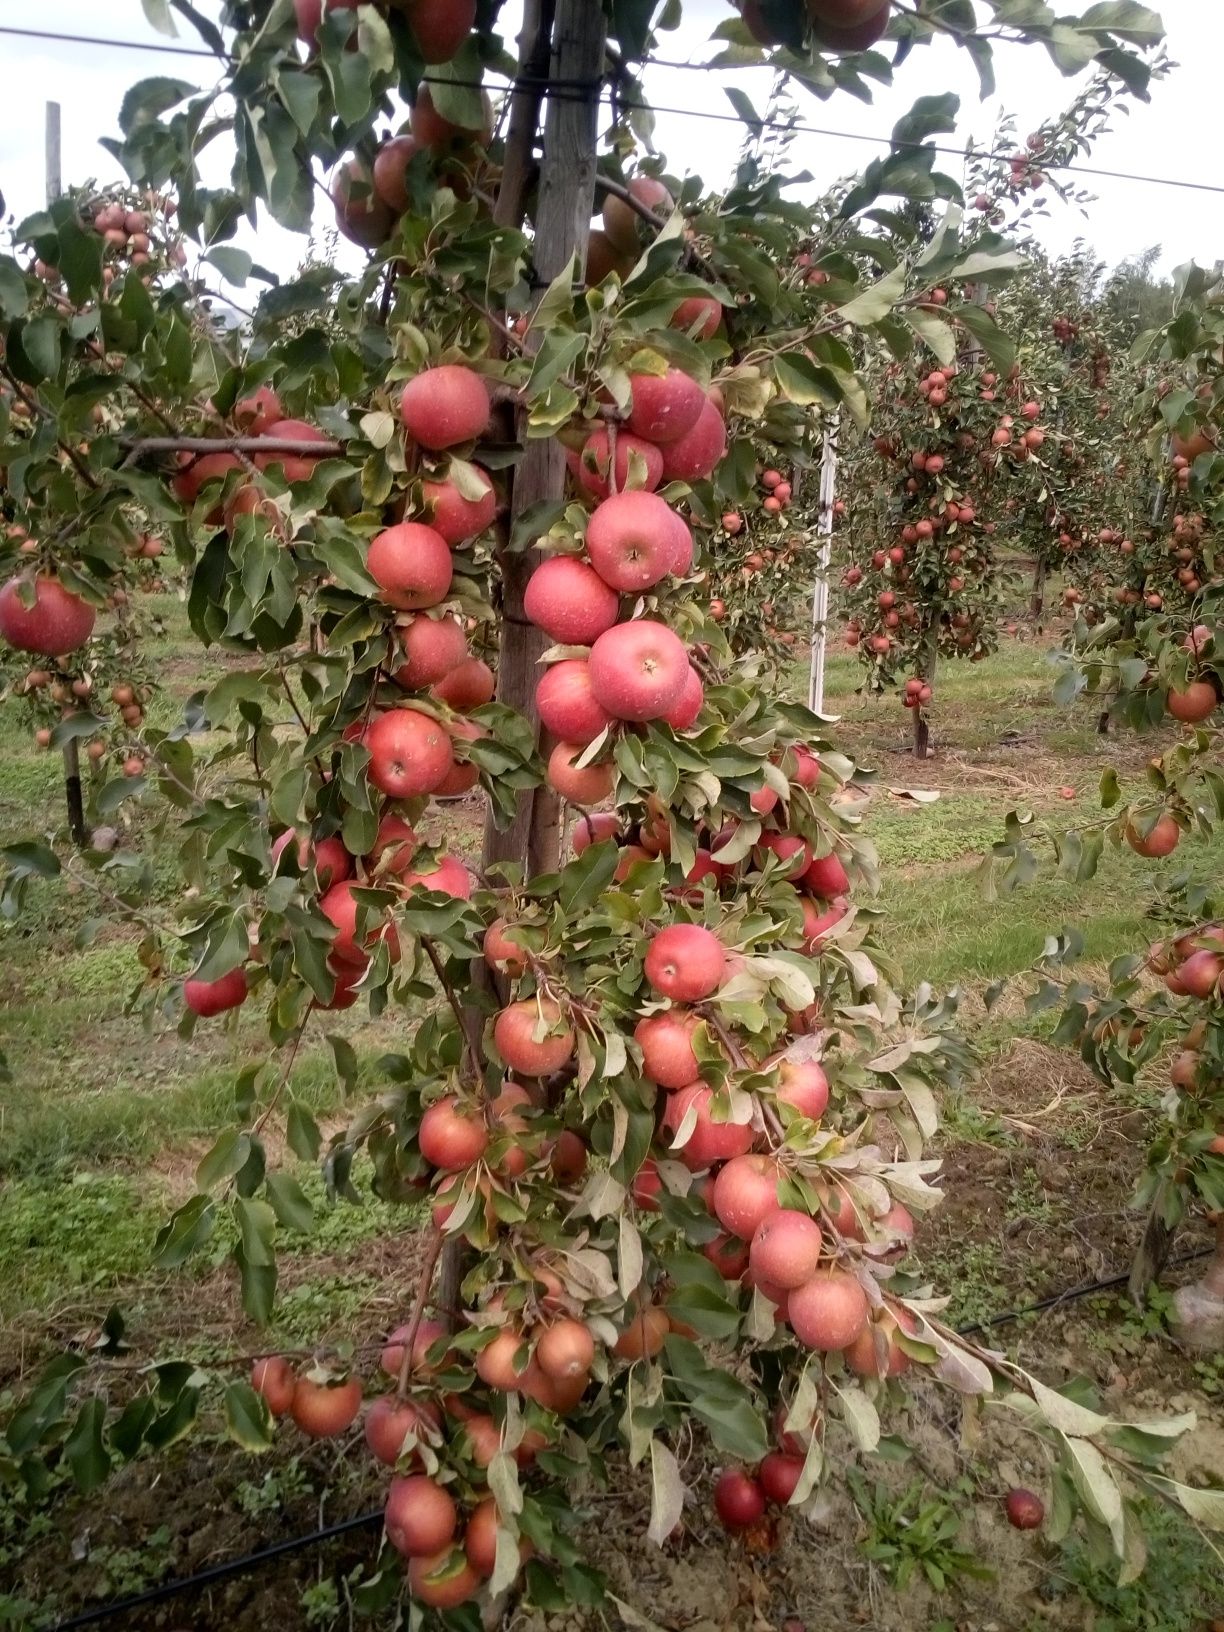 jabłka oraz gruszki deserowe ,sprzedaż bezpośrednio z sadu